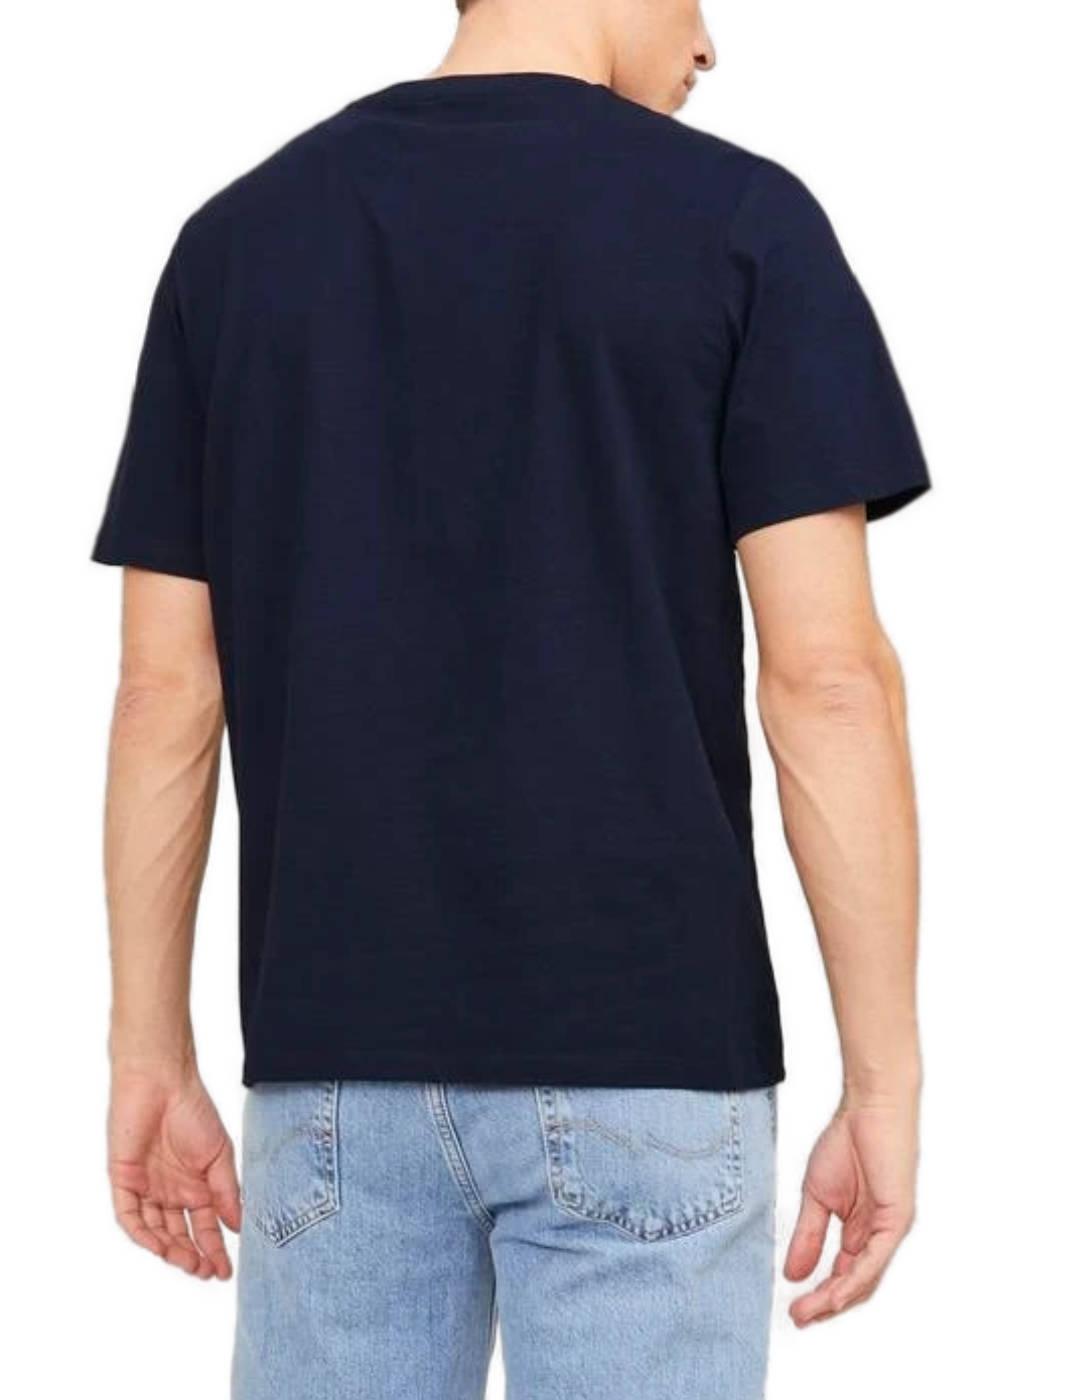 Camiseta Jack&Jones Zuri marino manga corta para hombre